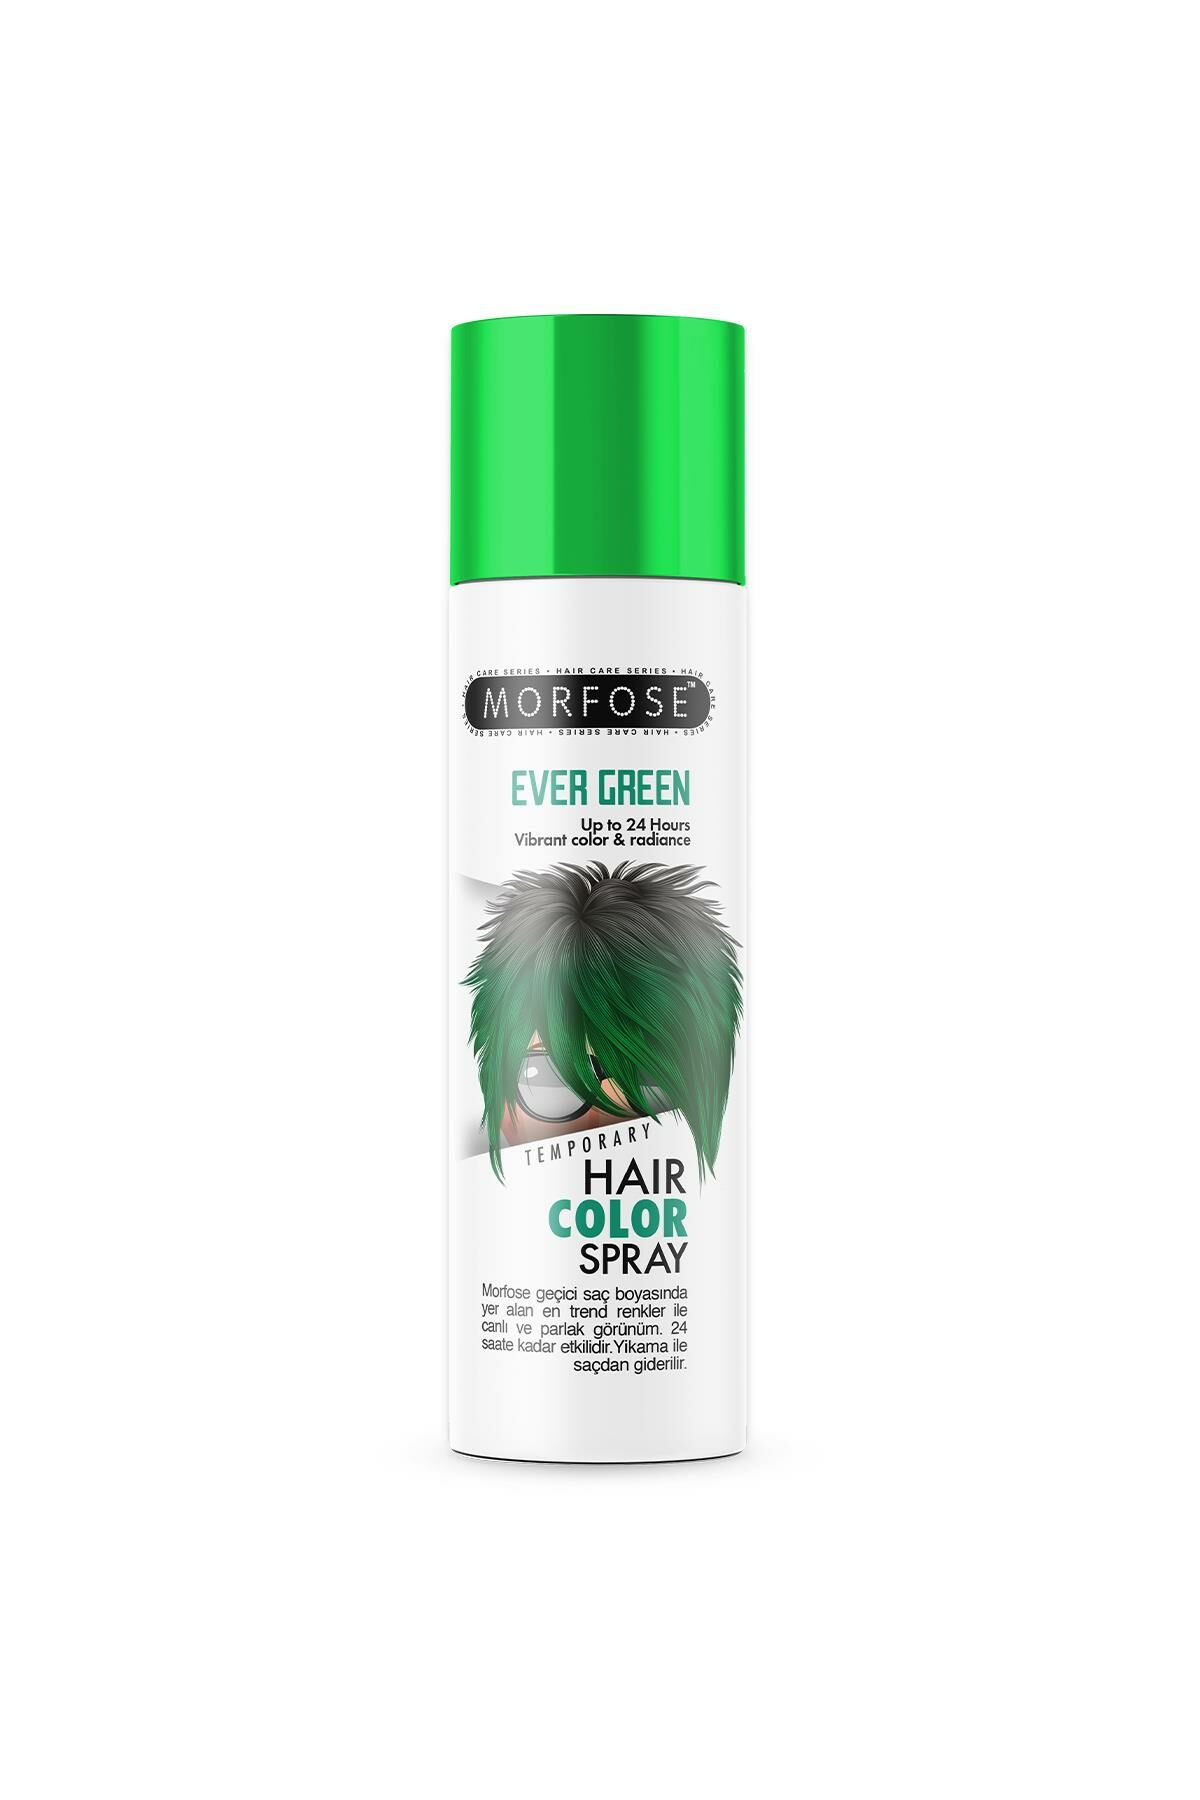 Mech 24 Saate Kadar Etkili Yeşil Renkli Saç Spreyi Ever Green 150 ml